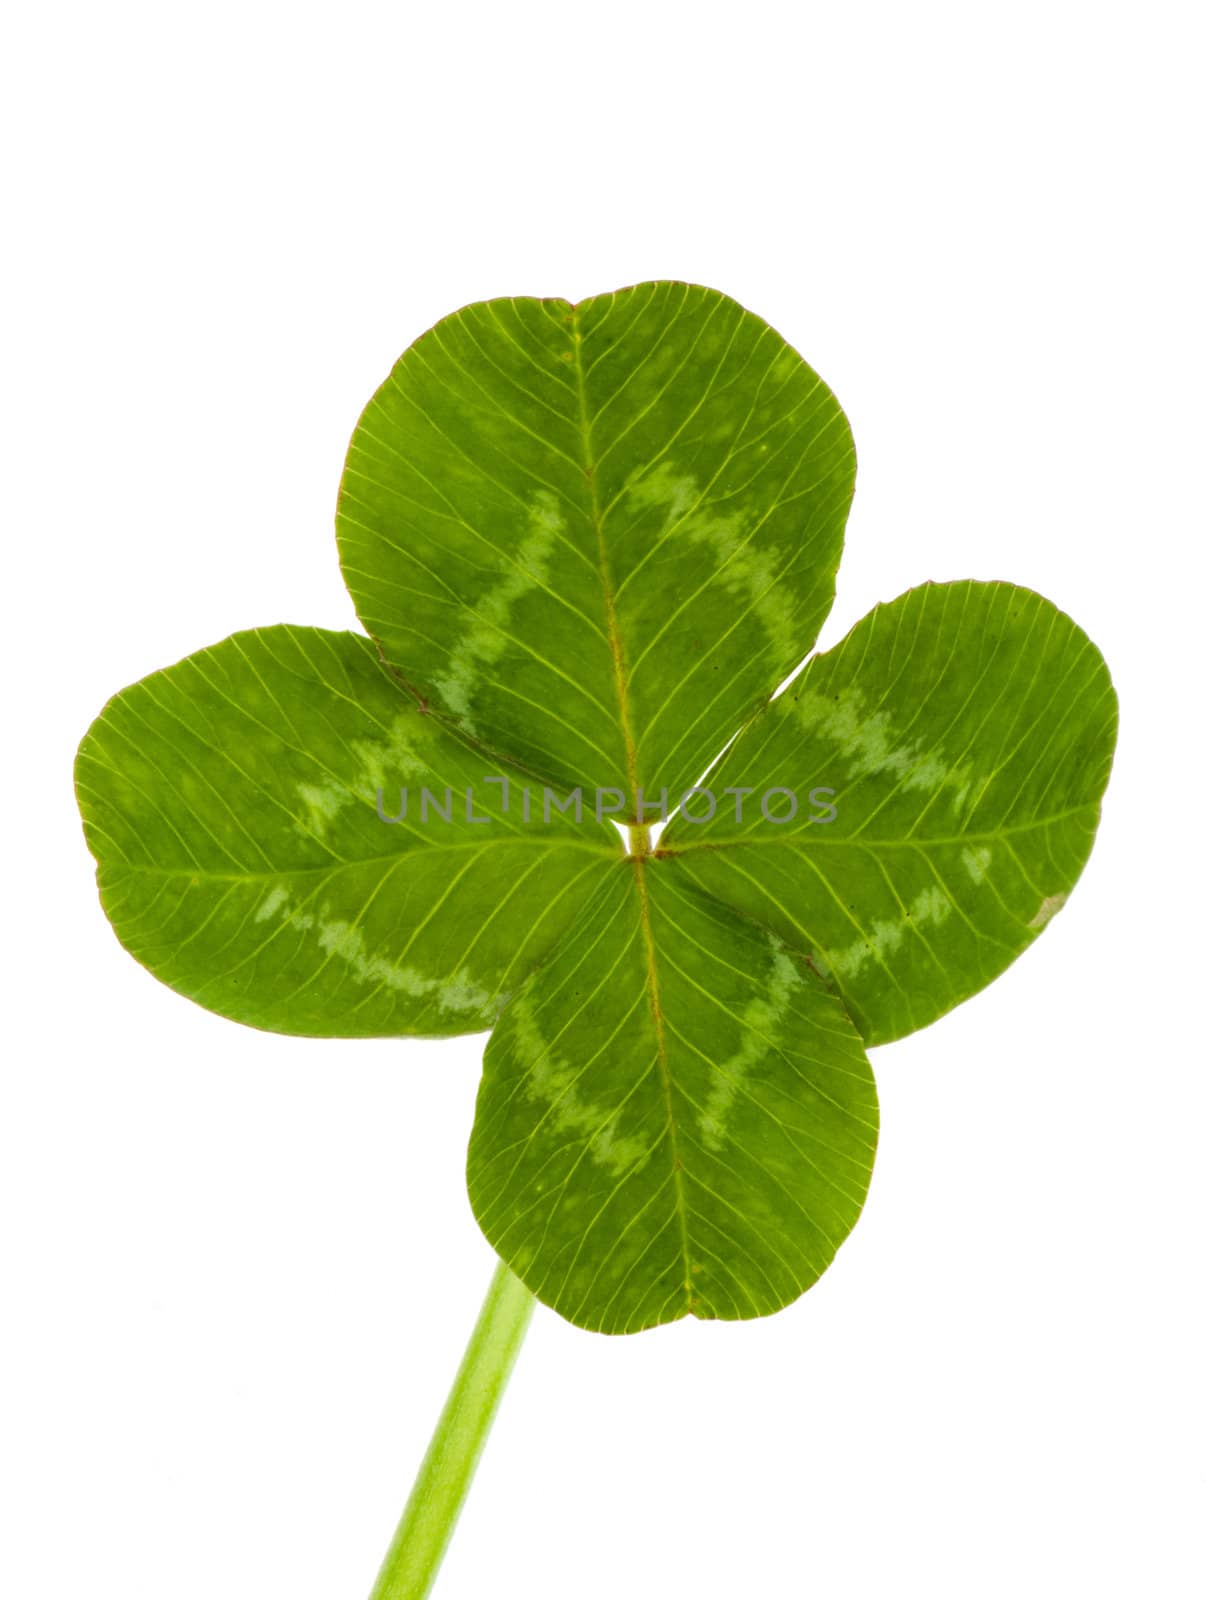 Green clover by vtorous